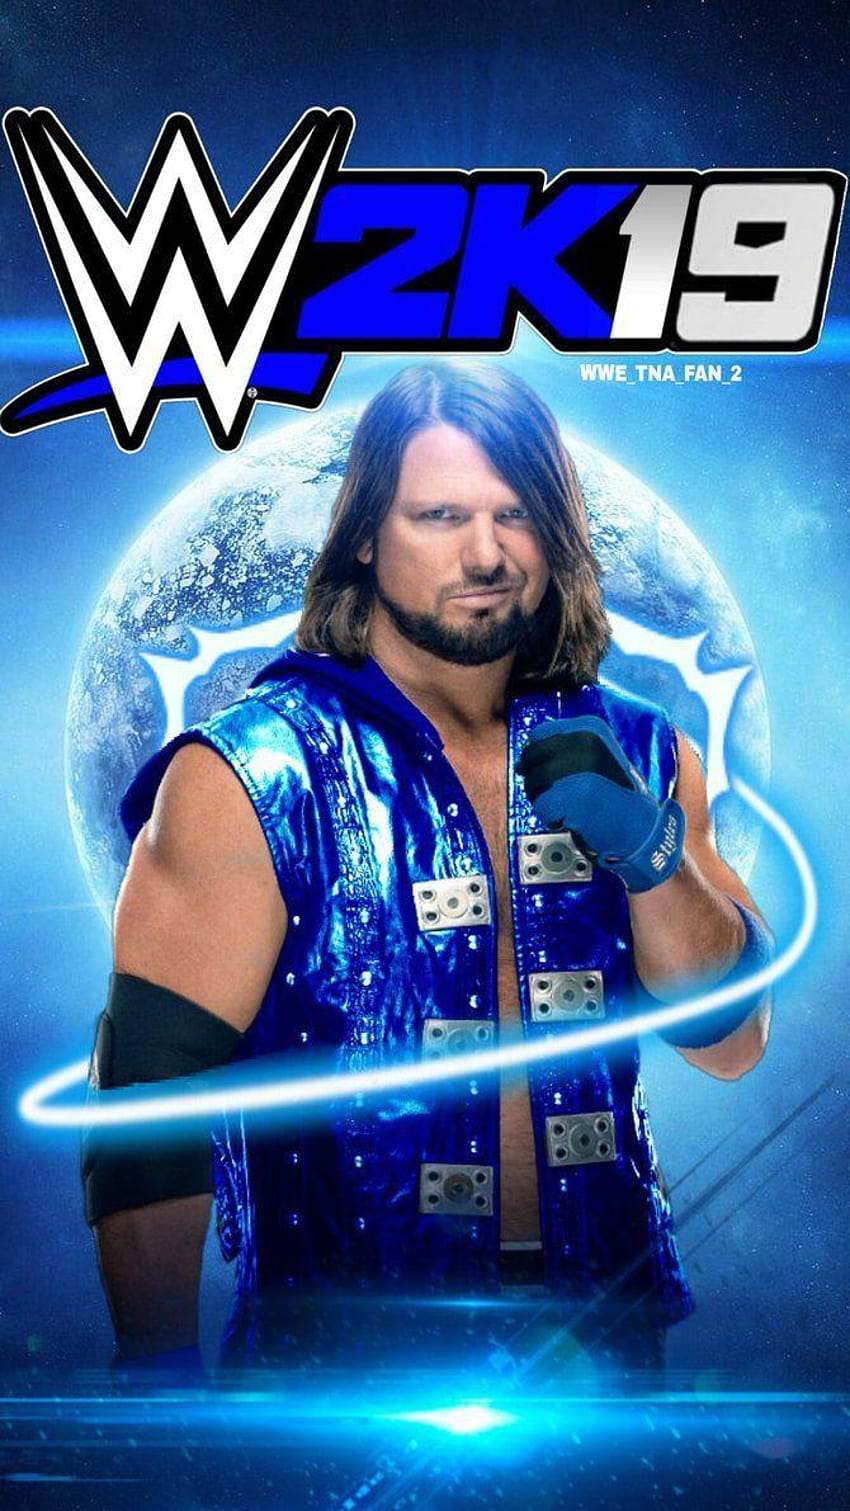 WWE 19 AJ Styles Custom Cover by WWETNAFAN2 HD phone wallpaper | Pxfuel